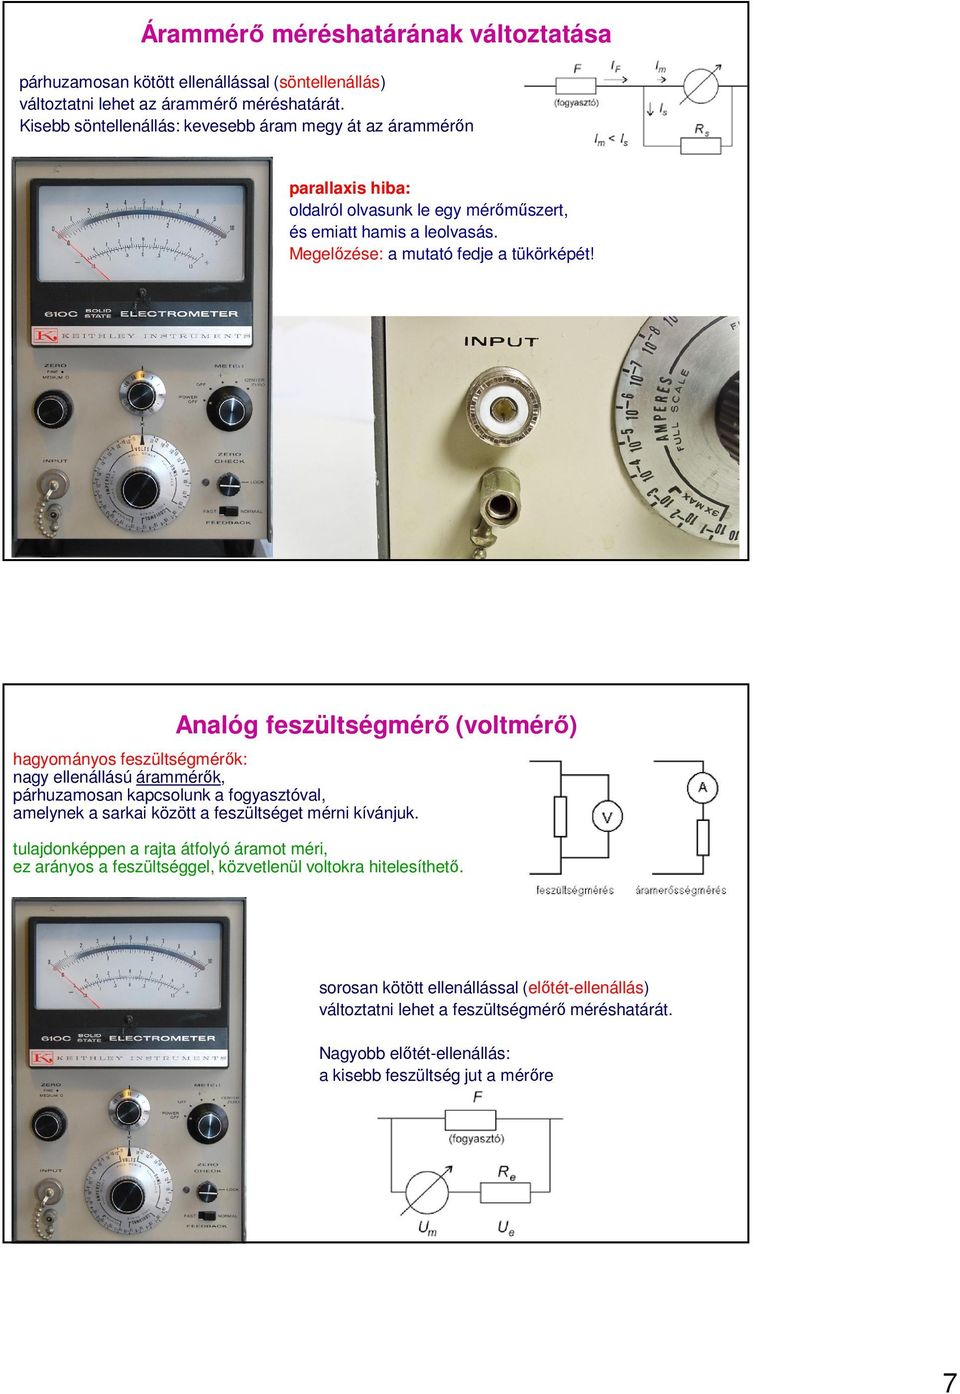 Analóg feszültségmérő (voltmérő) hagyományos feszültségmérők: nagy ellenállású árammérők, párhuzamosan kapcsolunk a fogyasztóval, amelynek a sarkai között a feszültséget mérni kívánjuk.